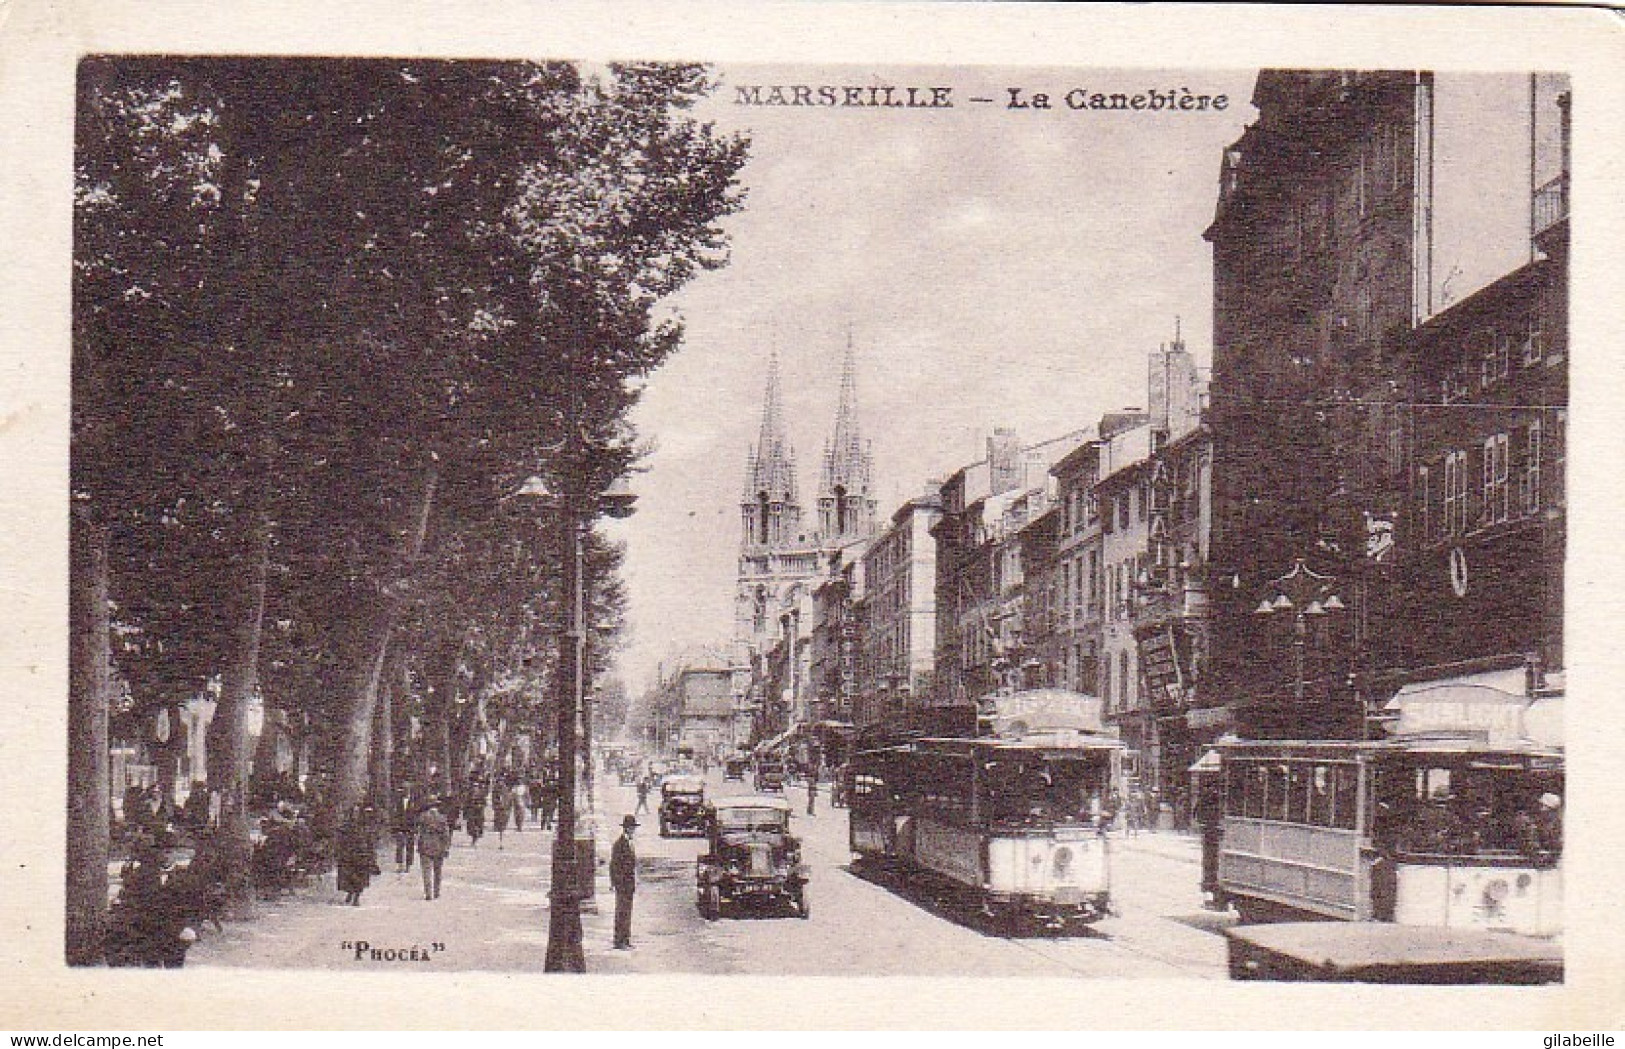 13 - MARSEILLE - La Canebiere - Canebière, Stadscentrum